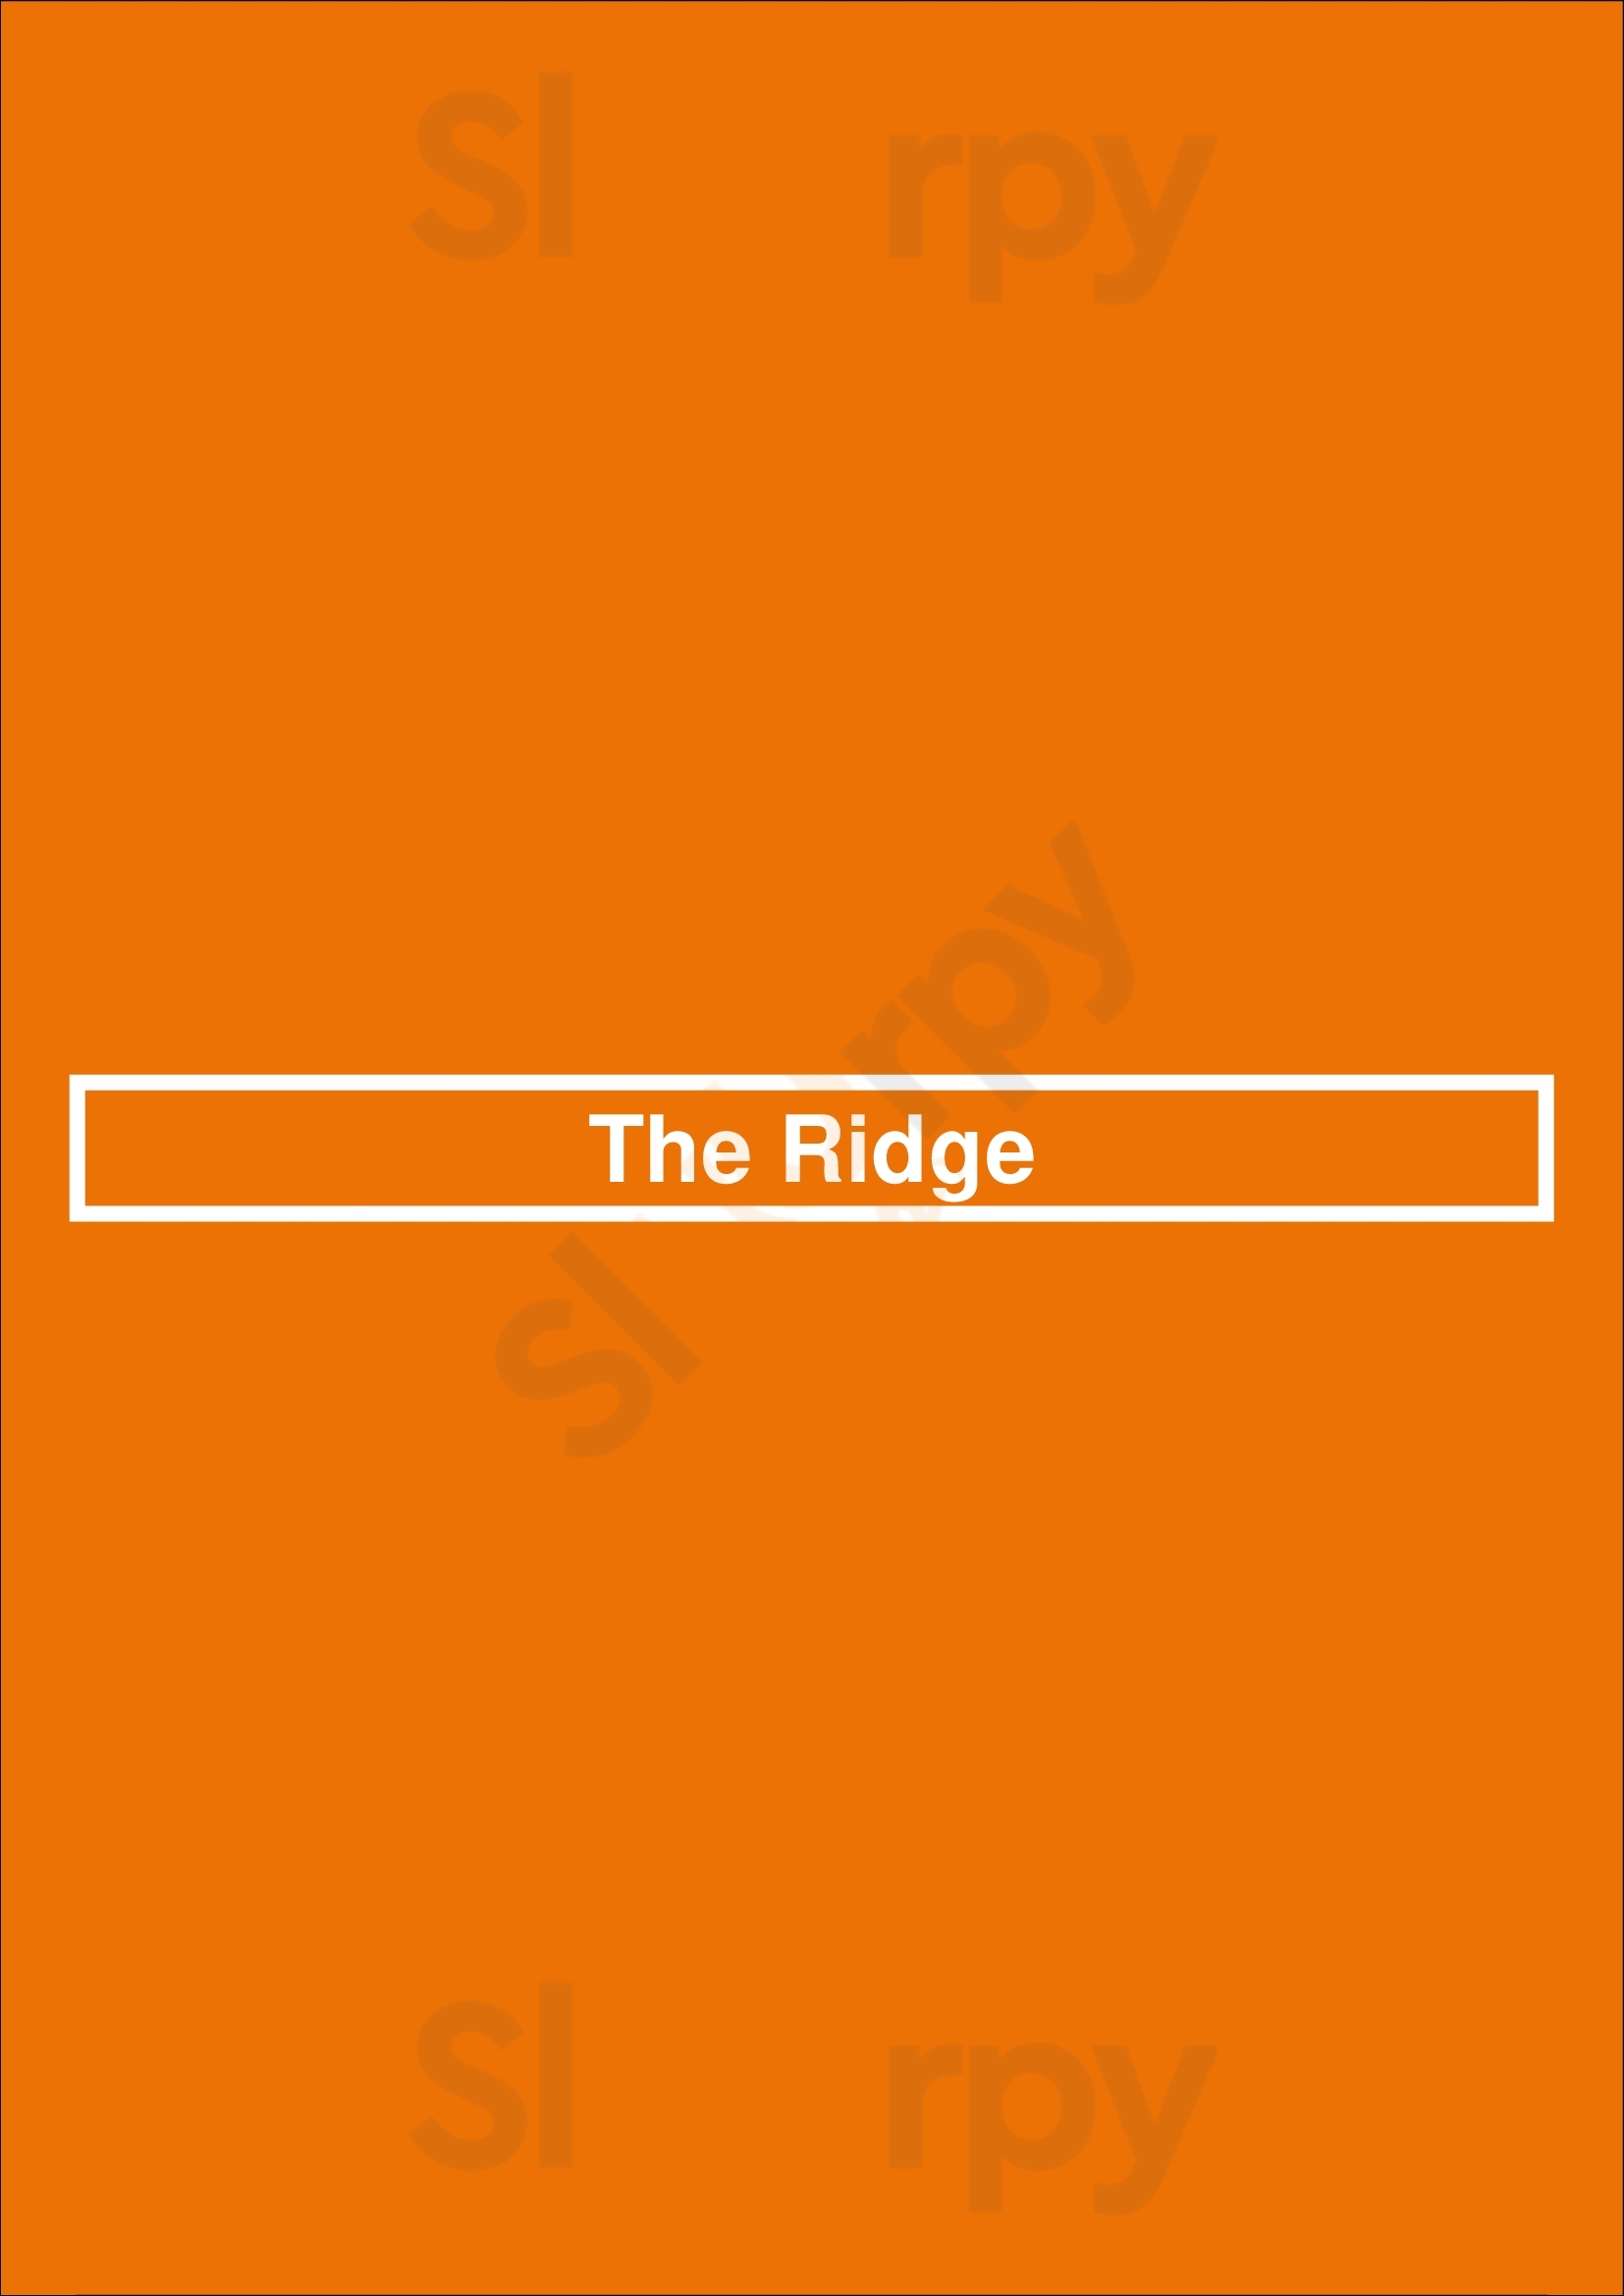 The Ridge Nashville Menu - 1